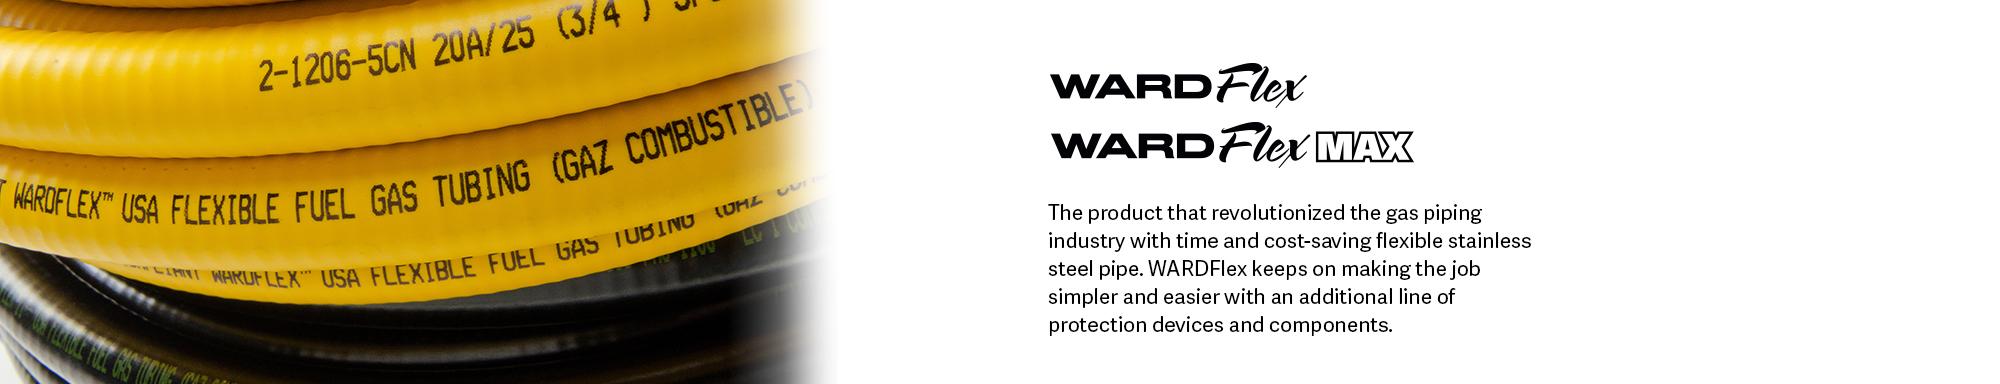 Wardflex Logo - wardflexlarge - WARDMFG